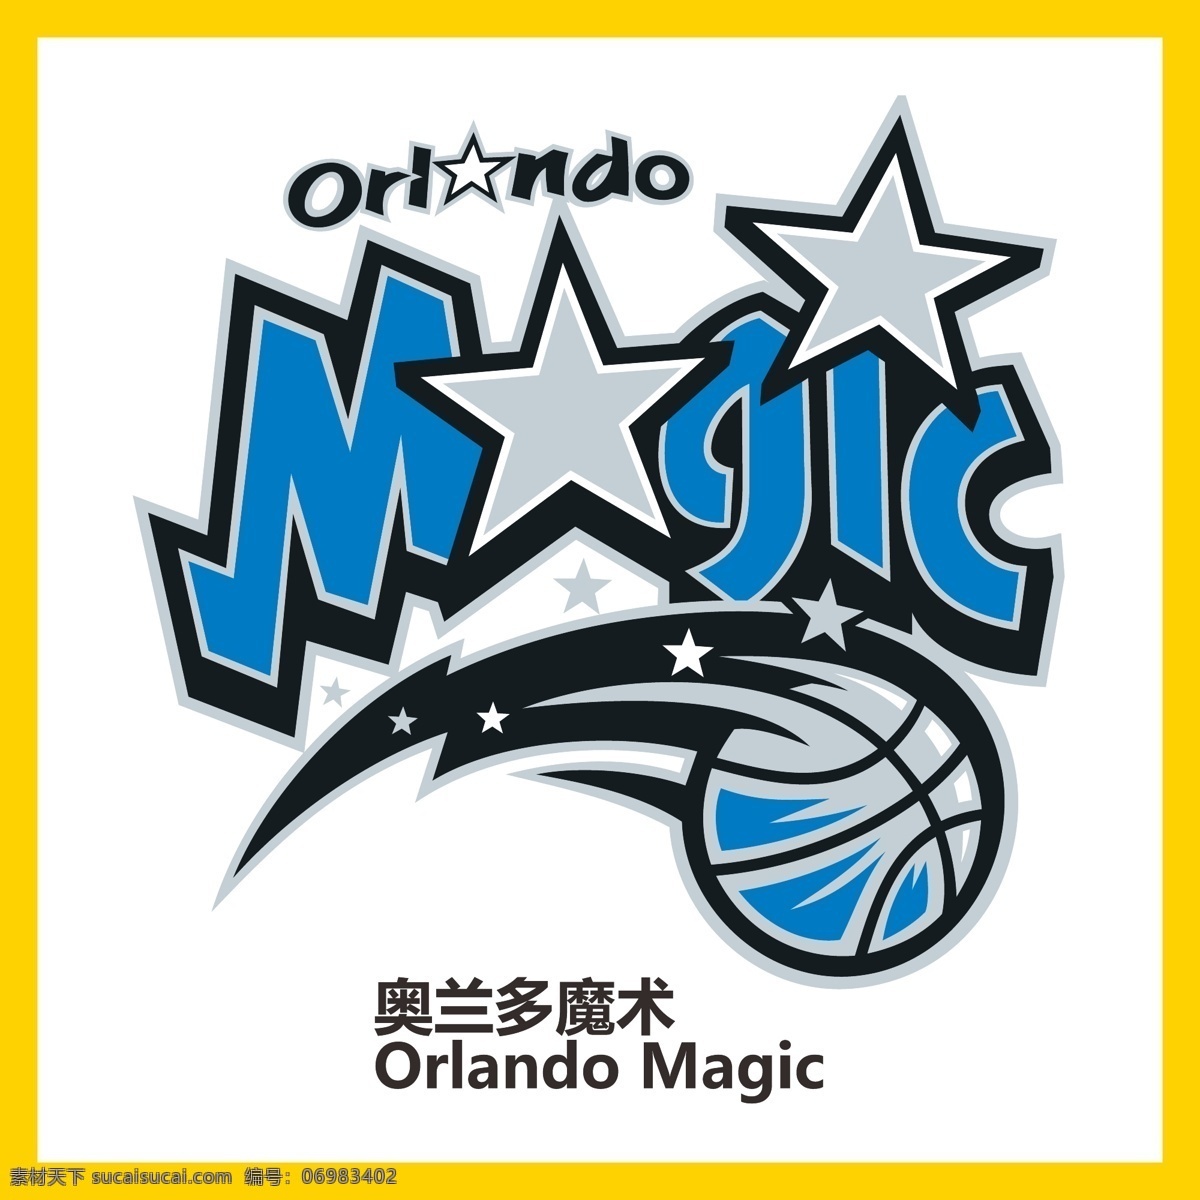 奥兰多魔术队 nba 总冠军 金牌选手 篮球 足球 橄榄球 棒球 游泳 奥运会 全运会 体育运动 明星 logo 标志 矢量 vi logo设计